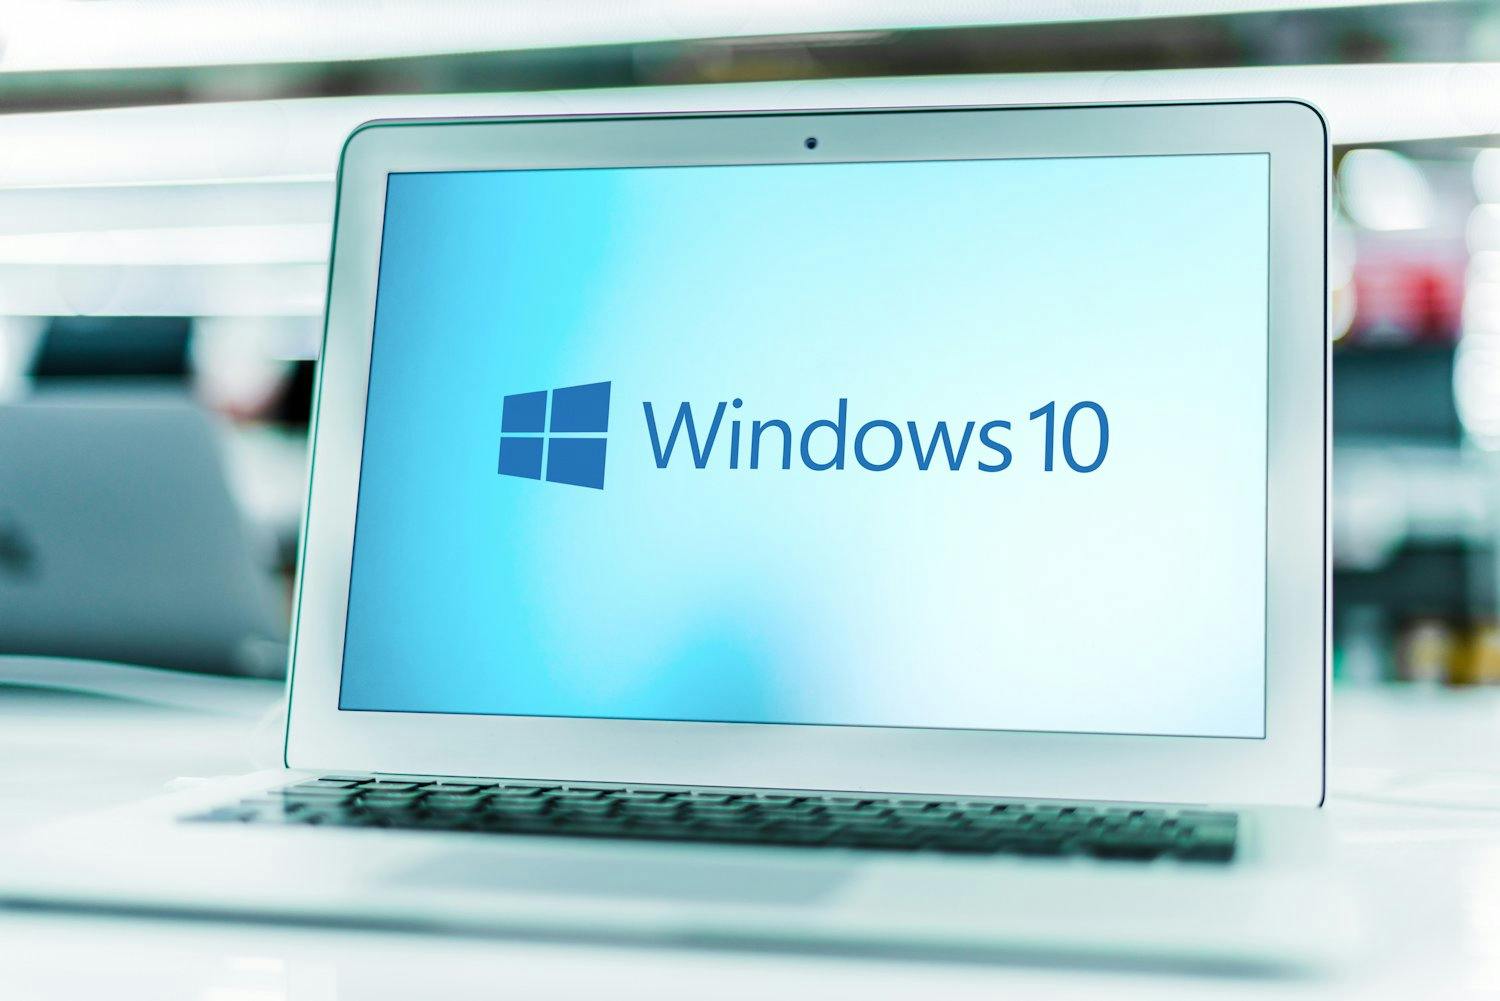 Har du en velfungerende pc med Windows 10 som ikke oppfyller systemkravene for Windows 11, blir den ikke nødvendigvis elektronikkavfall når Windows 10 går ut på dato i 2025. I stedet kan du kjøpe tre år med ekstra sikkerhetsoppdateringer.